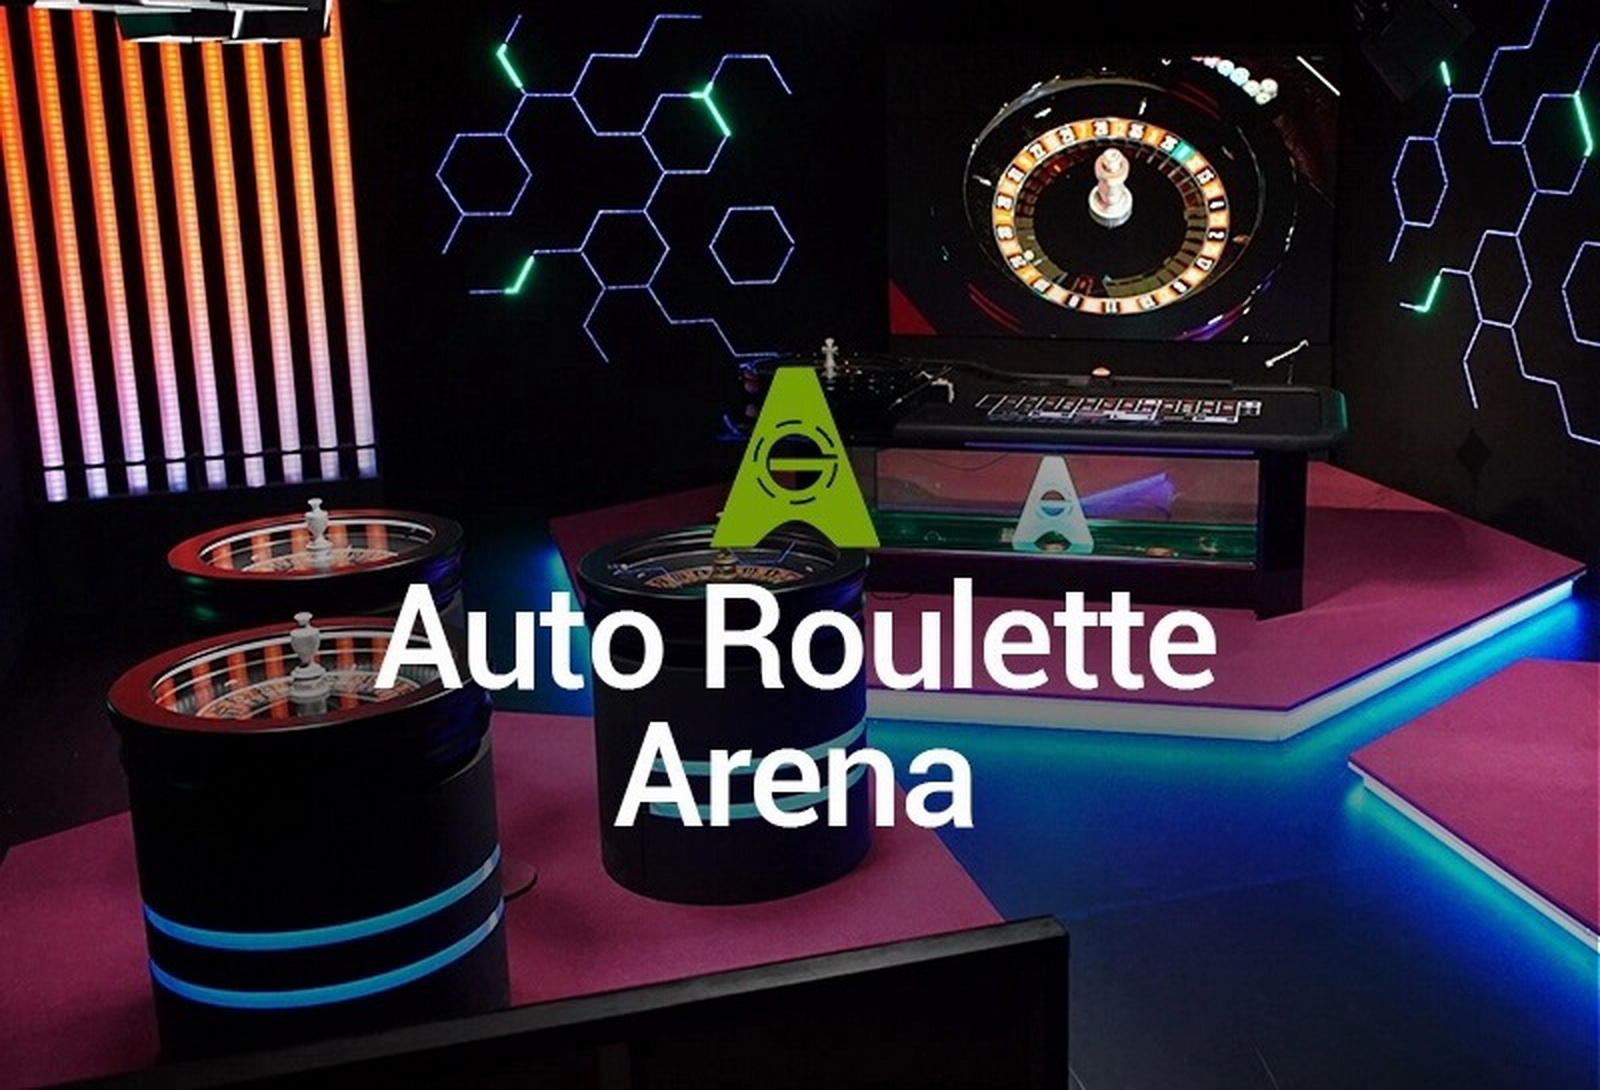 Auto Roulette Arena